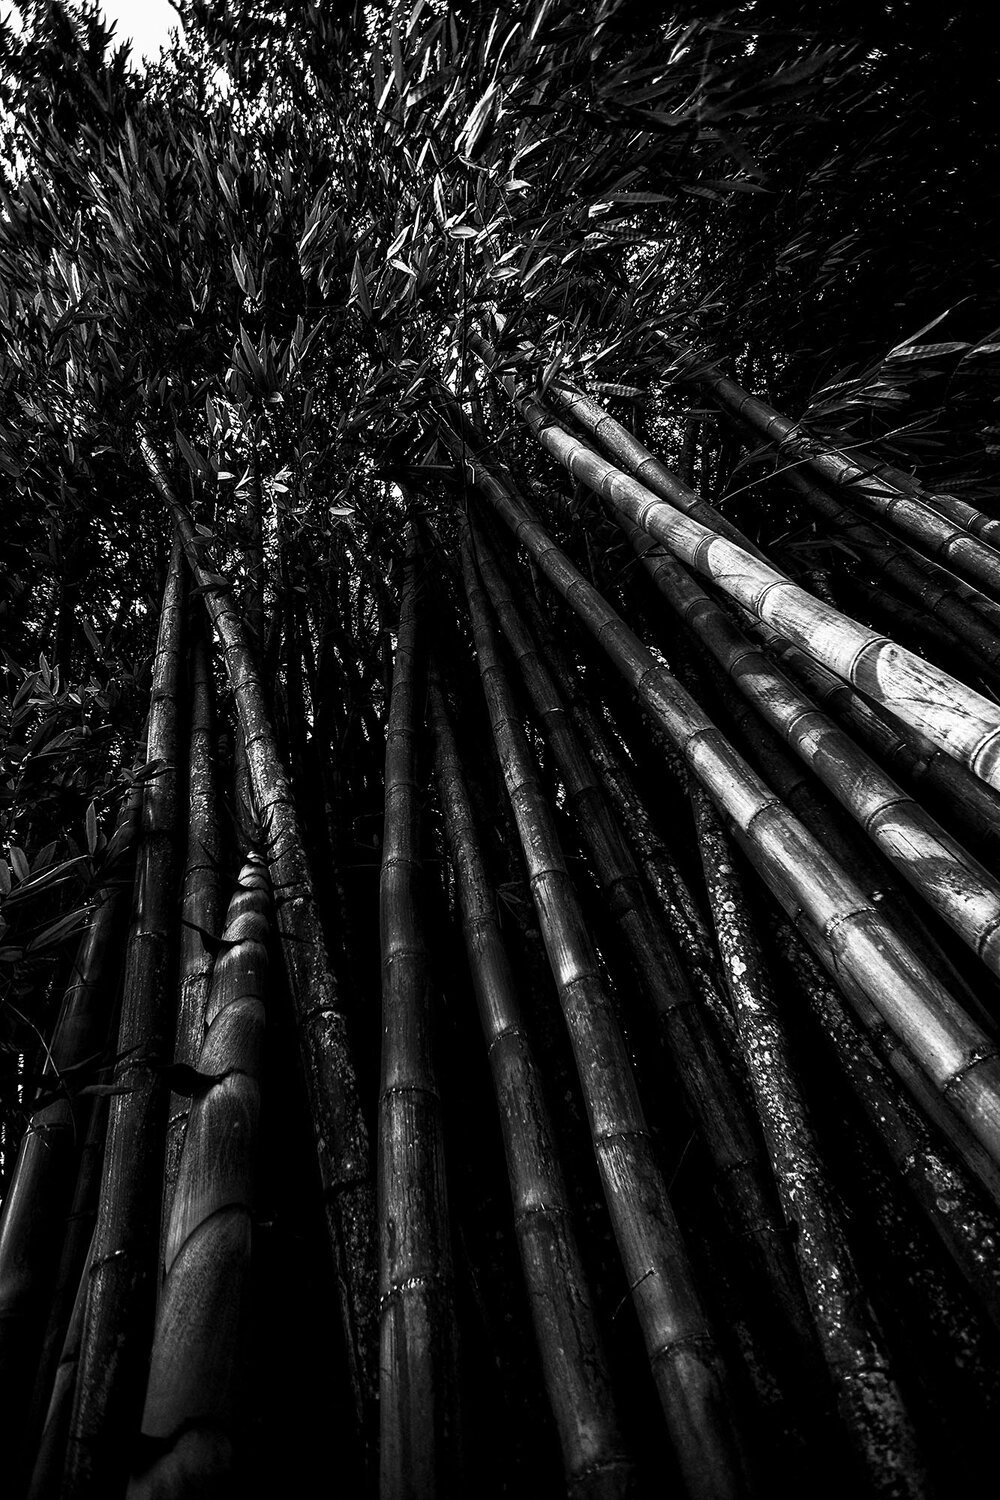 Bamboo, Sri Lanka